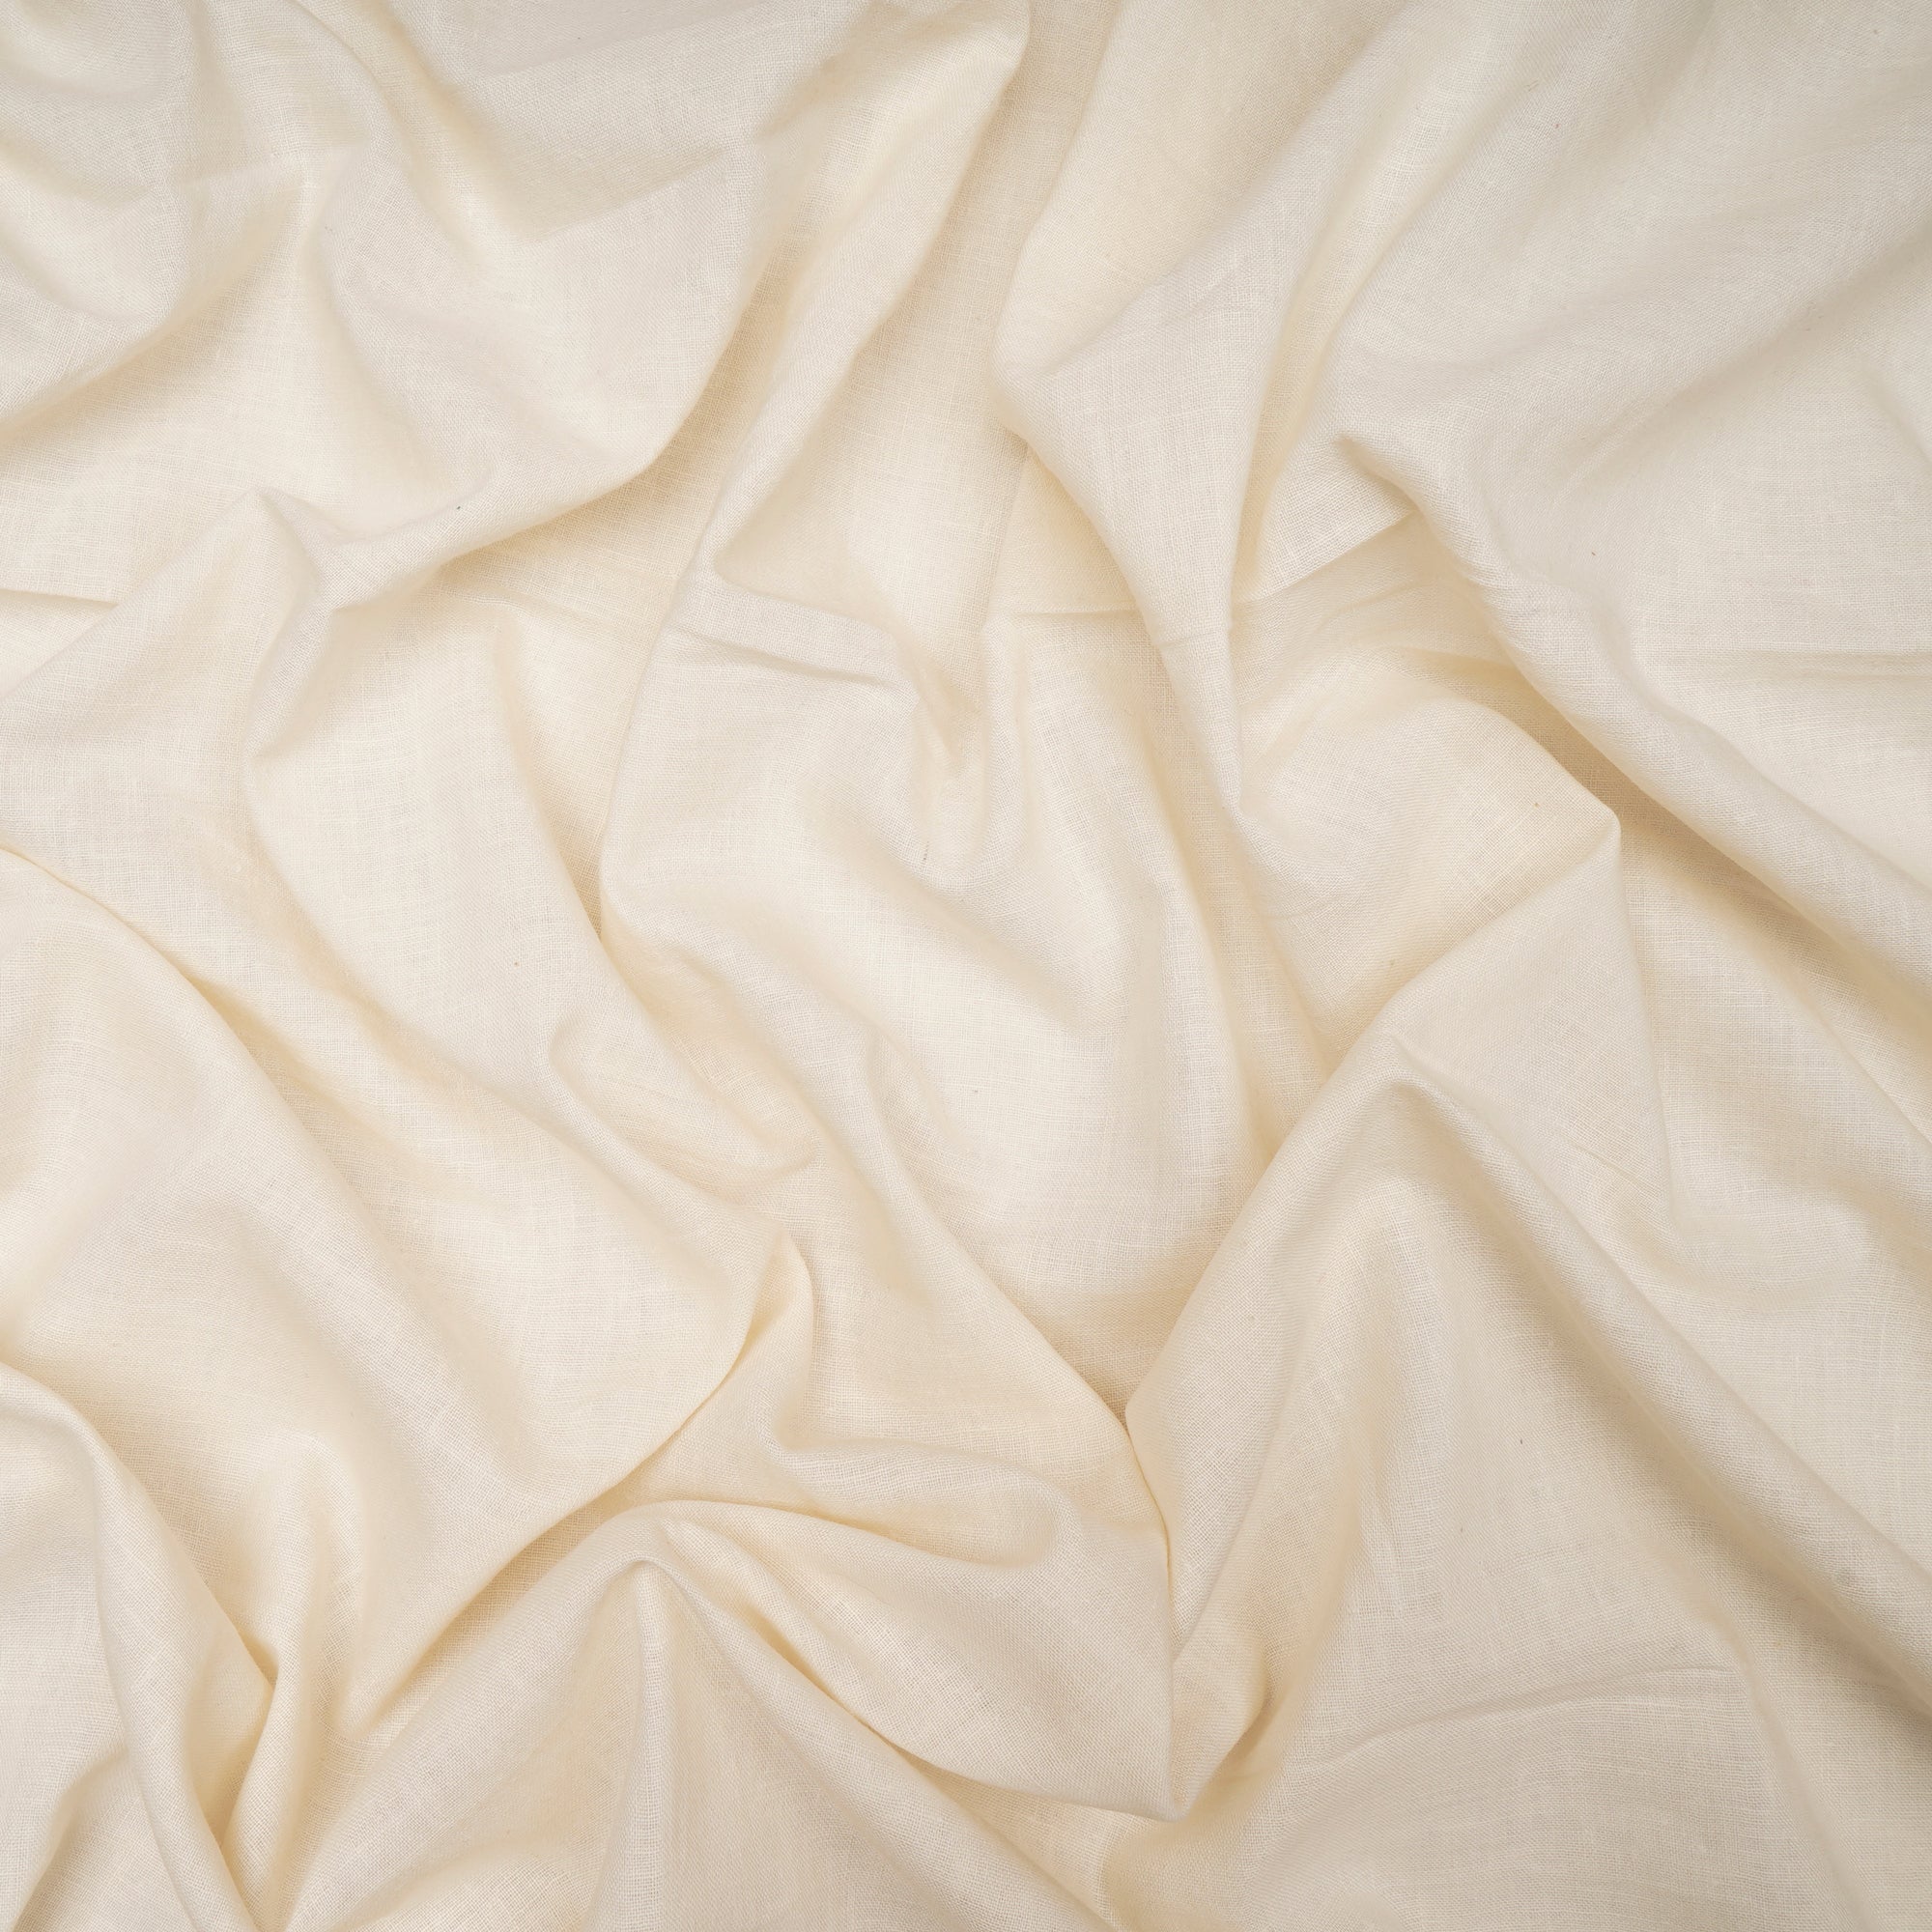 Cream Handwoven Handspun Muslin Cotton Fabric